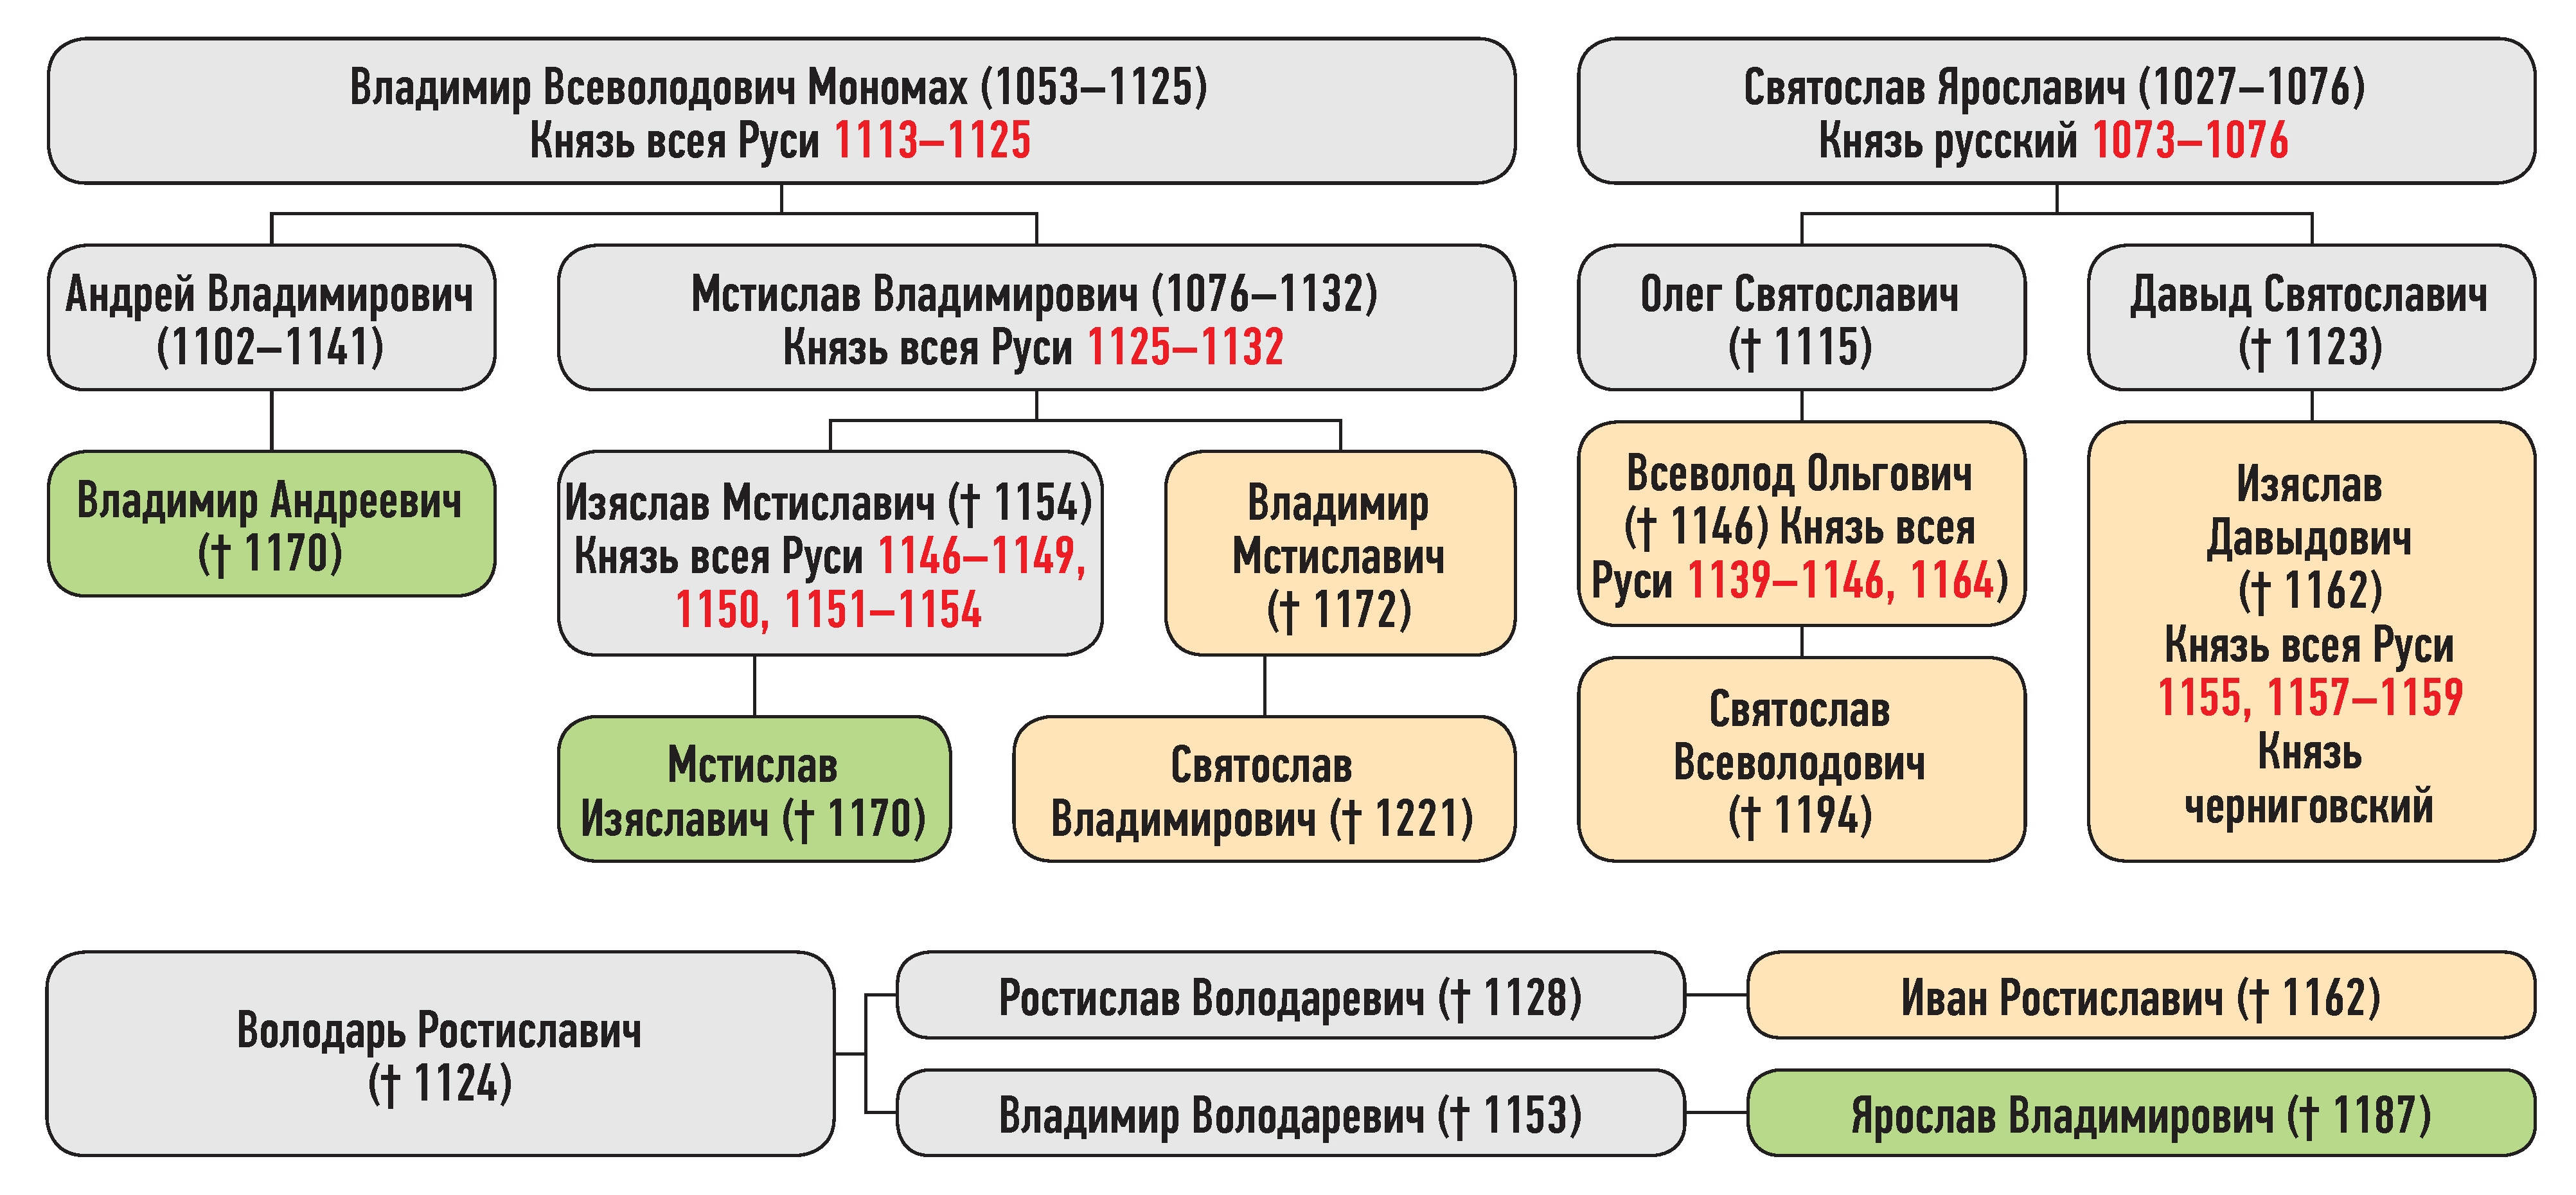 Генеалогическая схема к усобице Изяслава Давыдовича и Мстислава Изяславича зимой 1158 г.